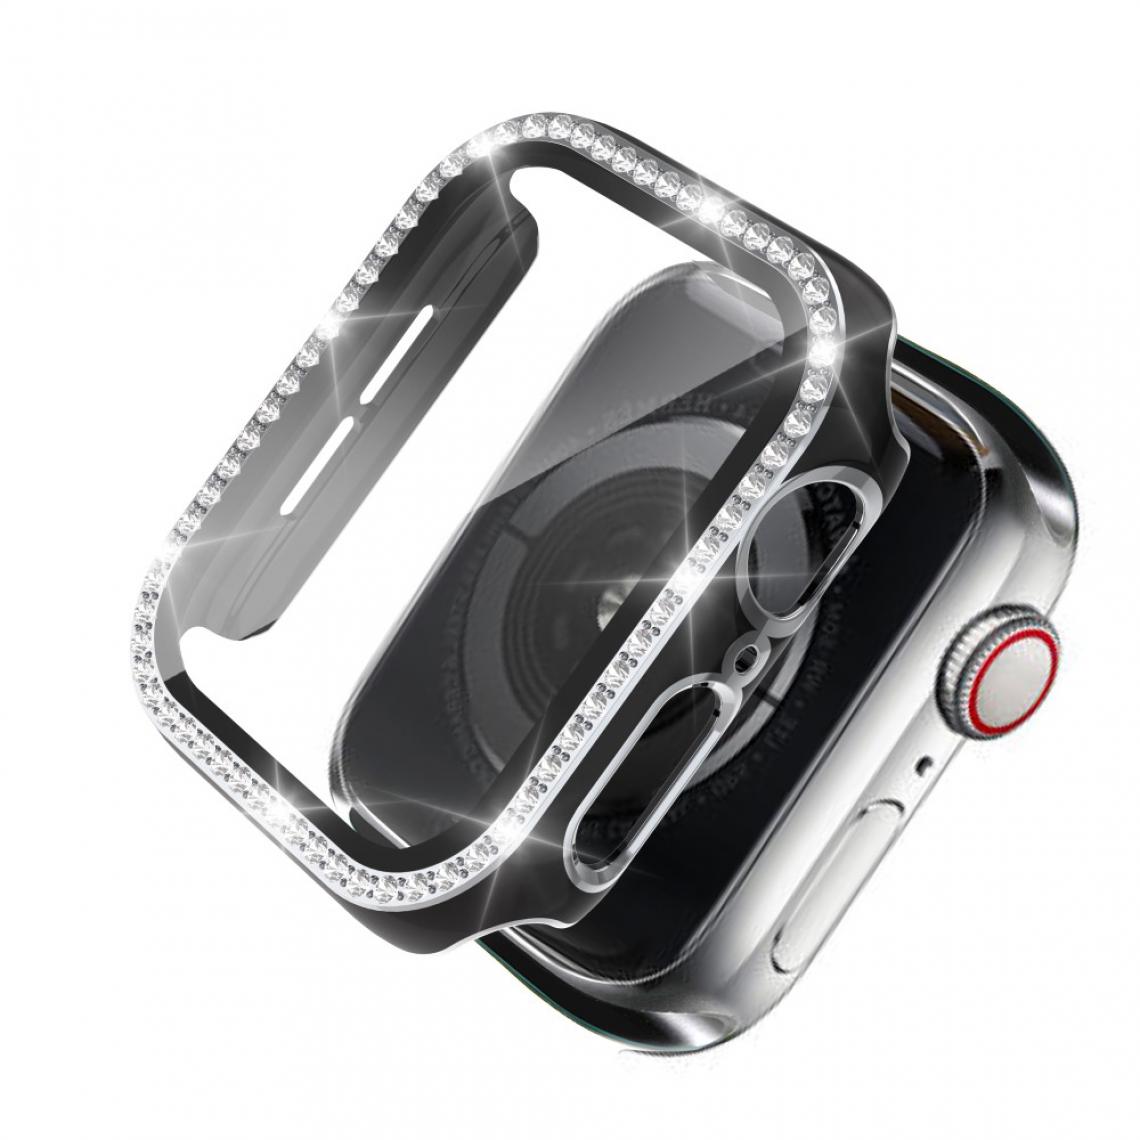 Other - Coque en TPU Cristal de strass de galvanoplastie bicolore noir/argent pour votre Apple Watch 4/5/6/SE 44mm - Accessoires bracelet connecté